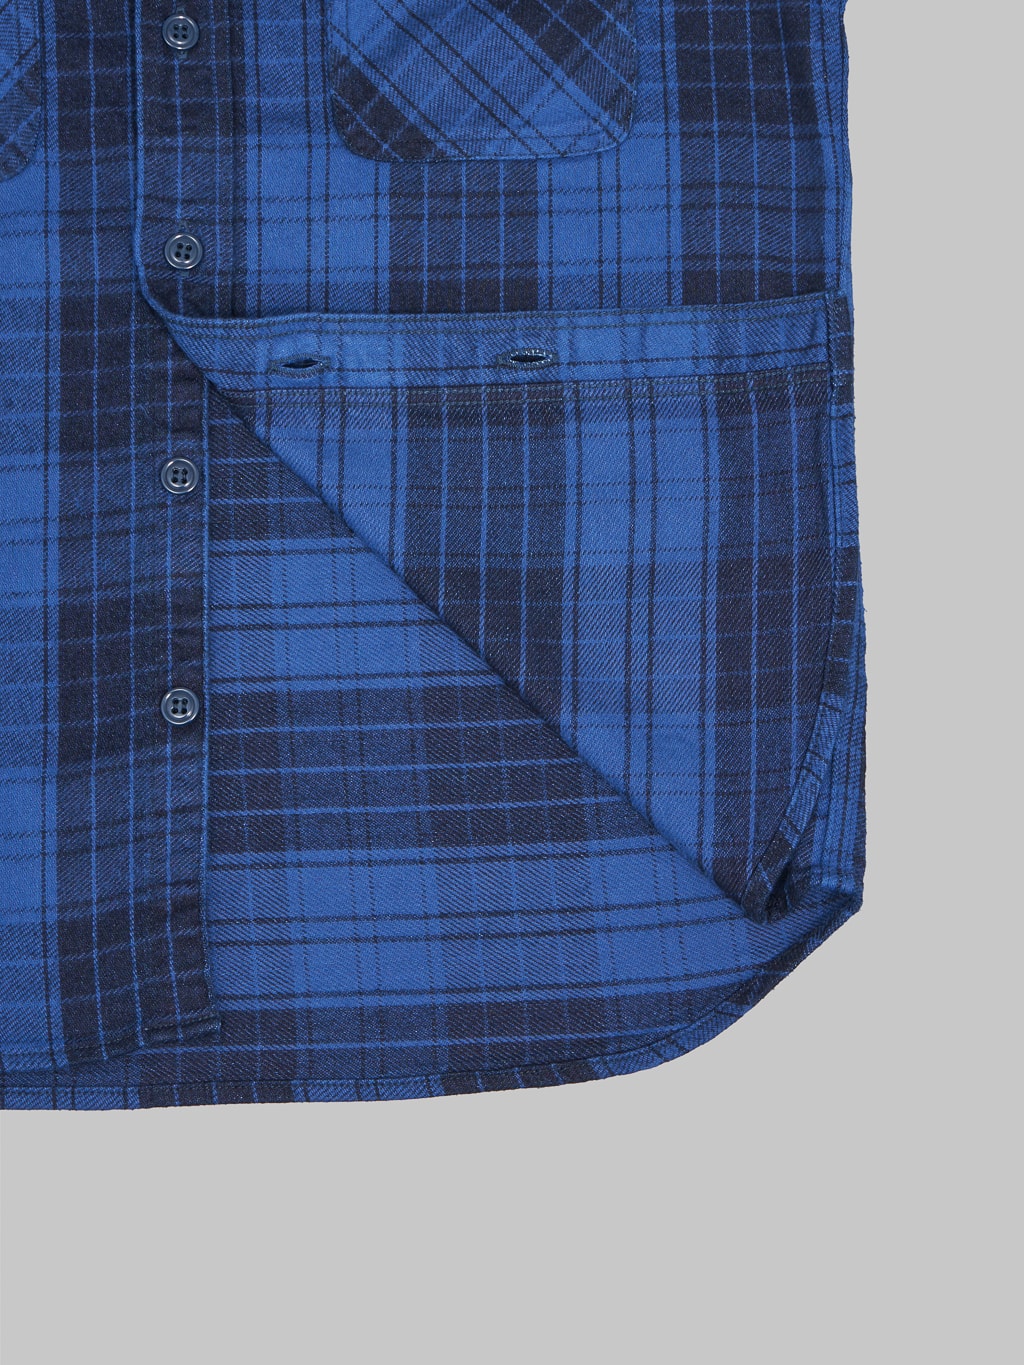 Momotaro original indigo twill check flannel shirt weft texture